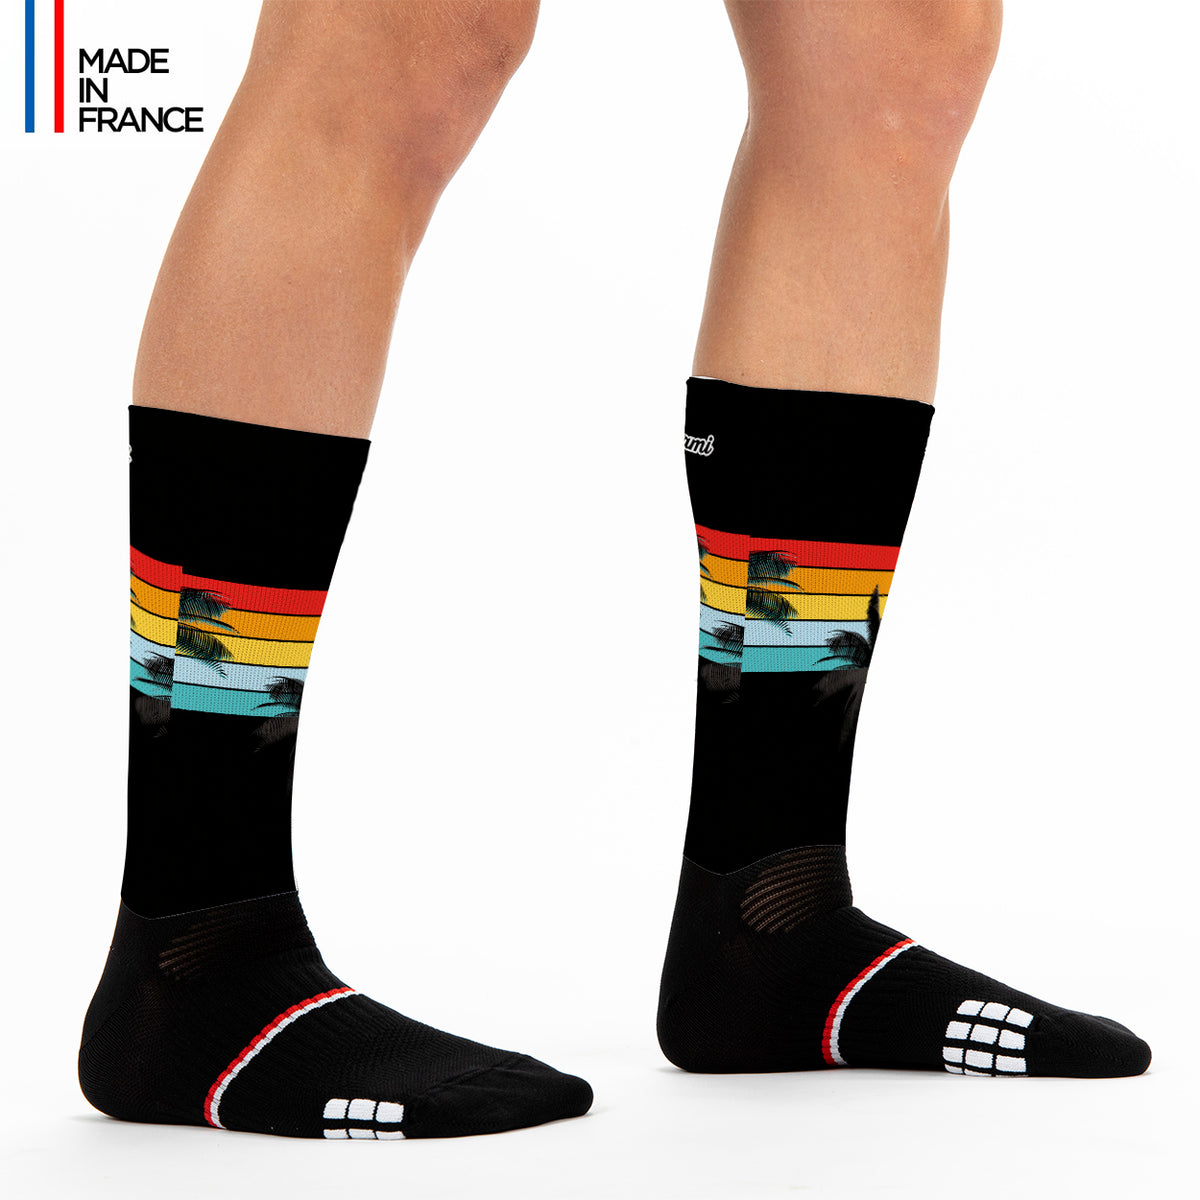 kiwami_triathlon_black_malibu socks